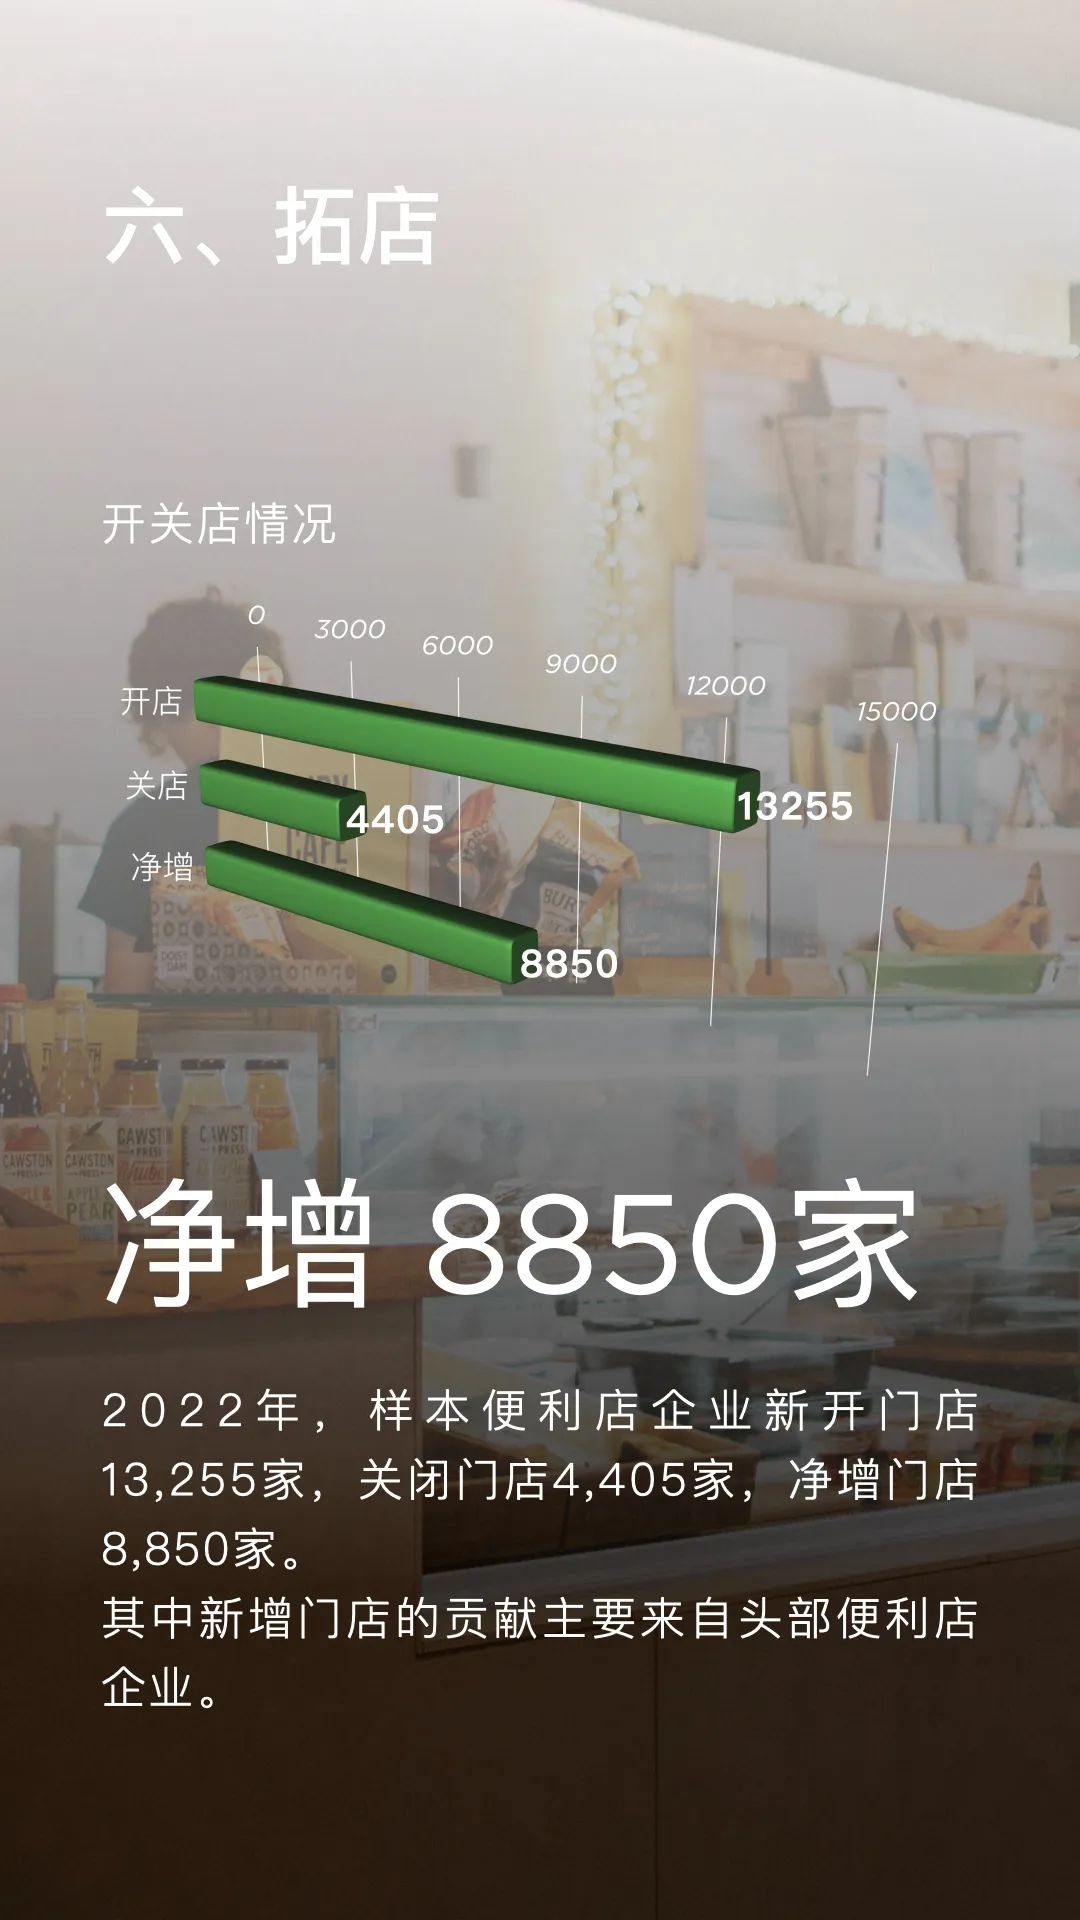 2022年中国便利店发展情况7.jpg